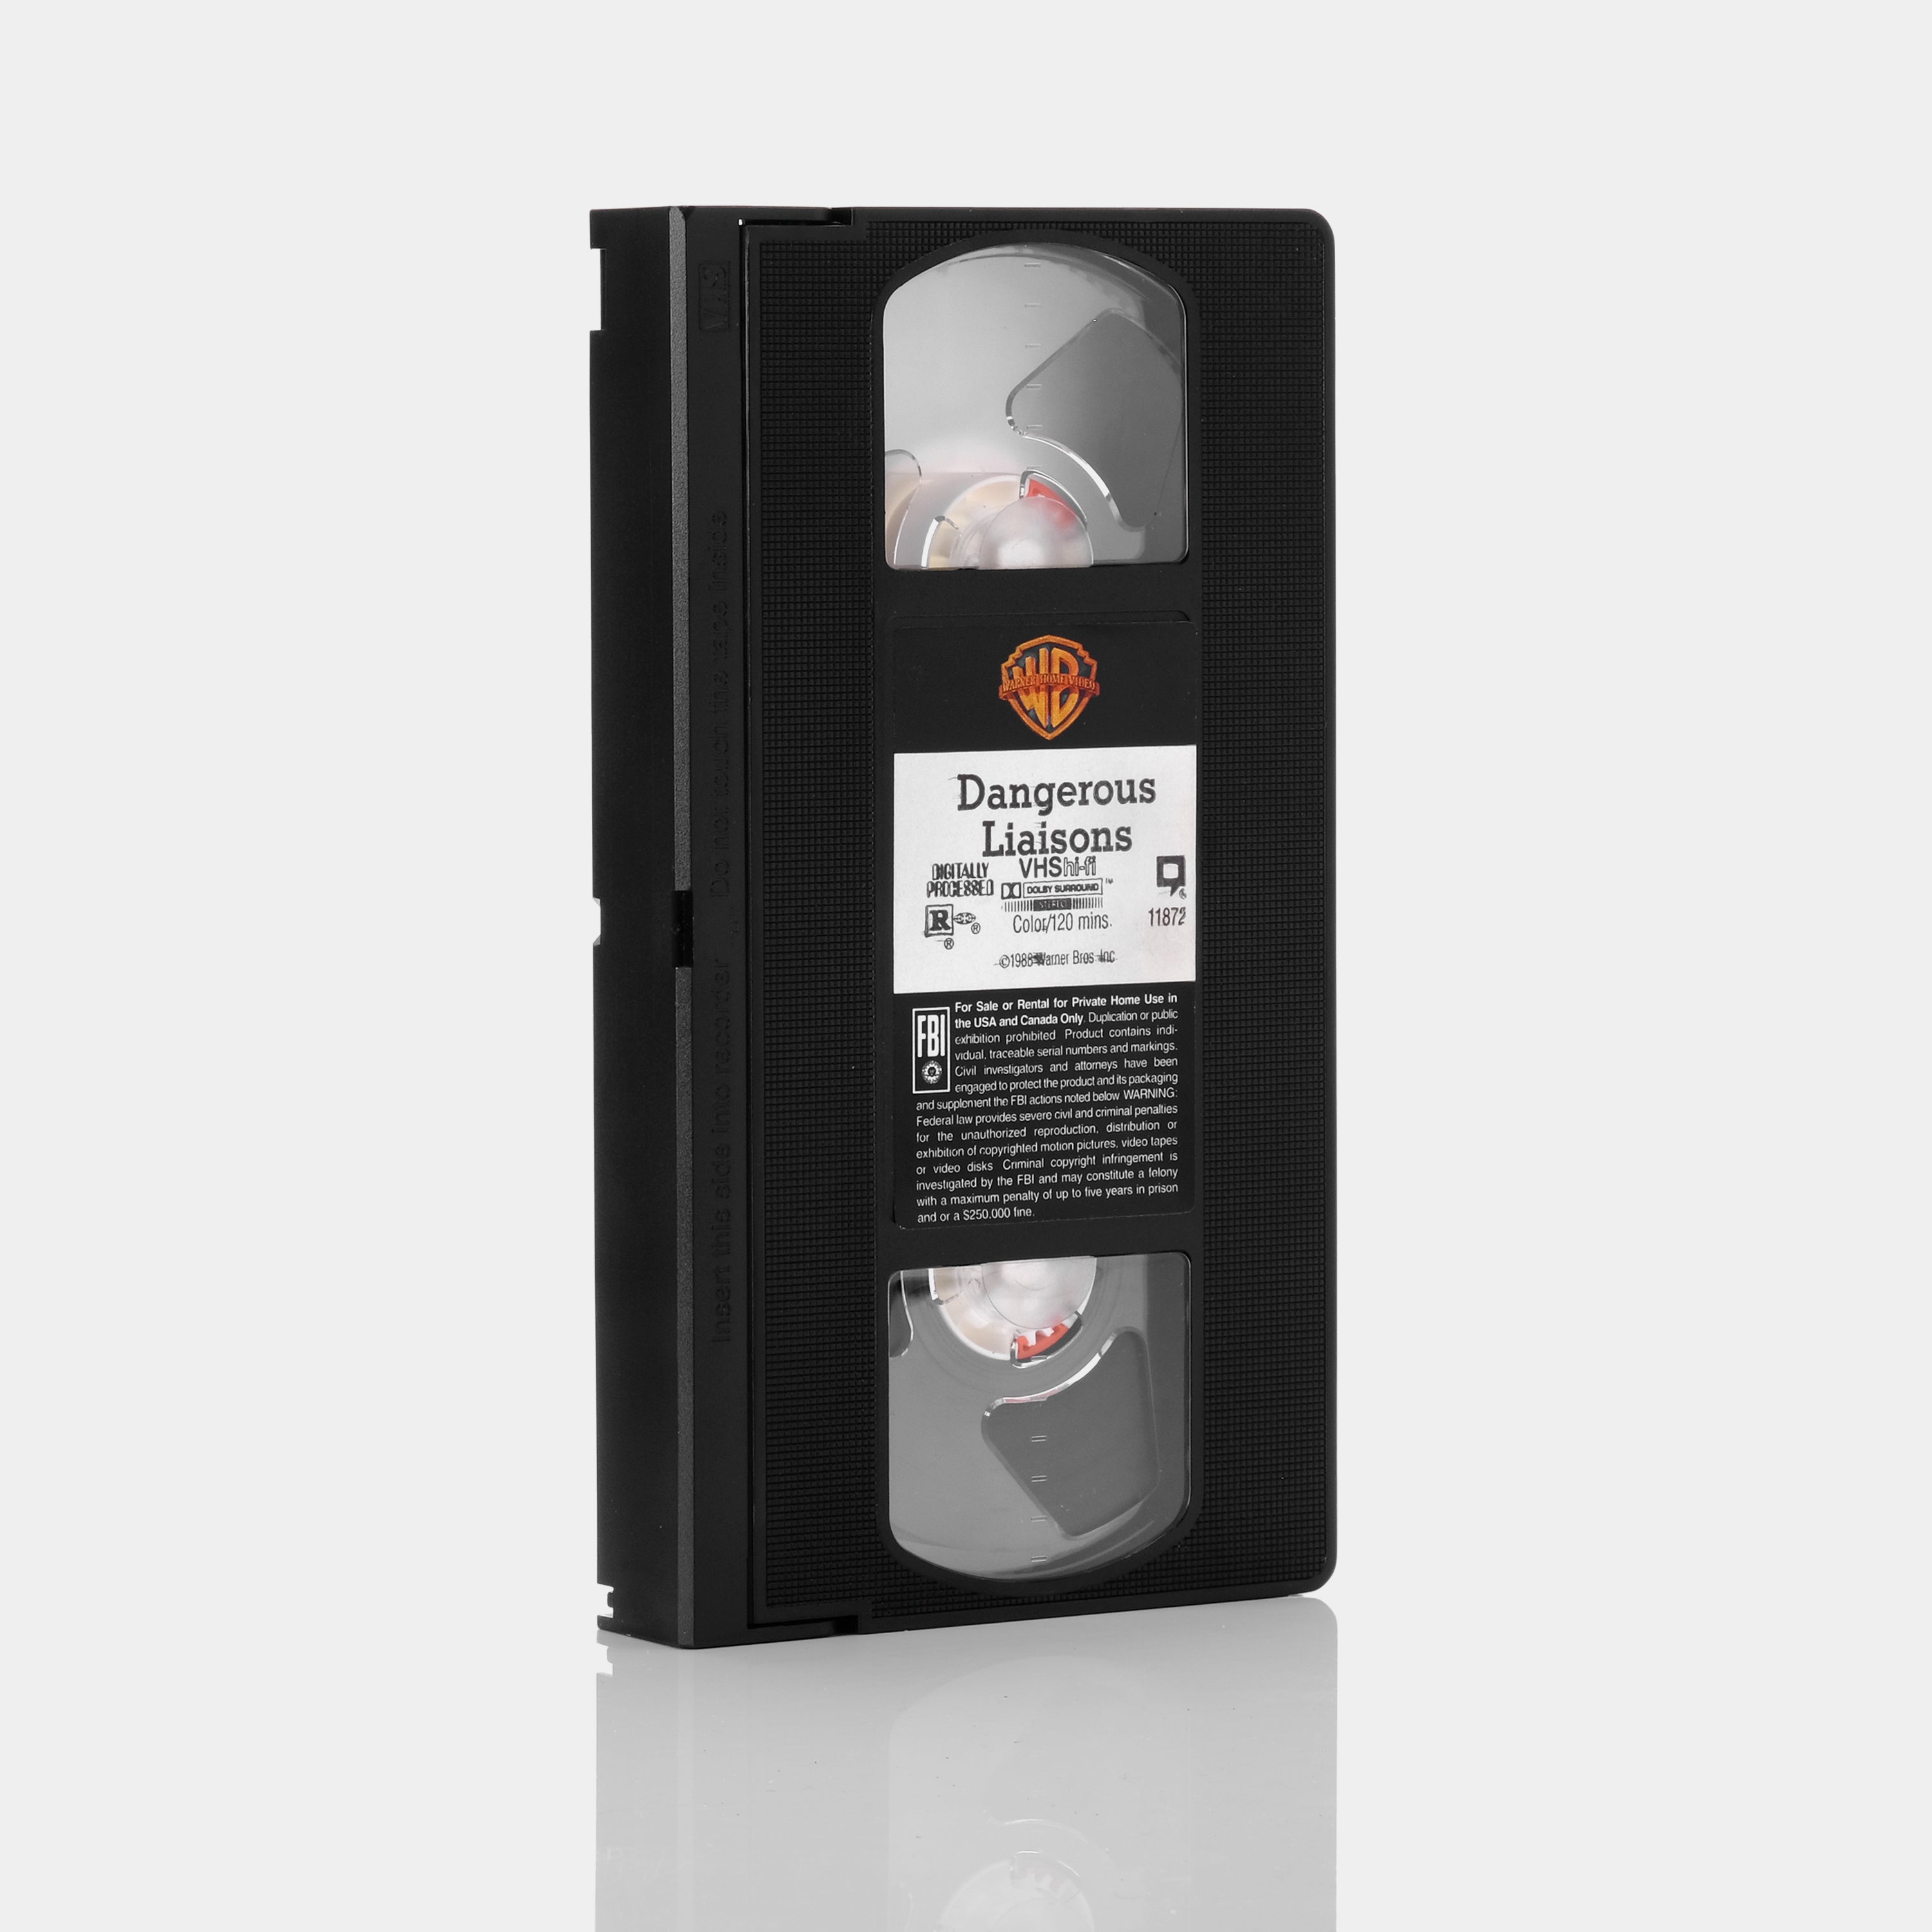 Dangerous Liaisons VHS Tape